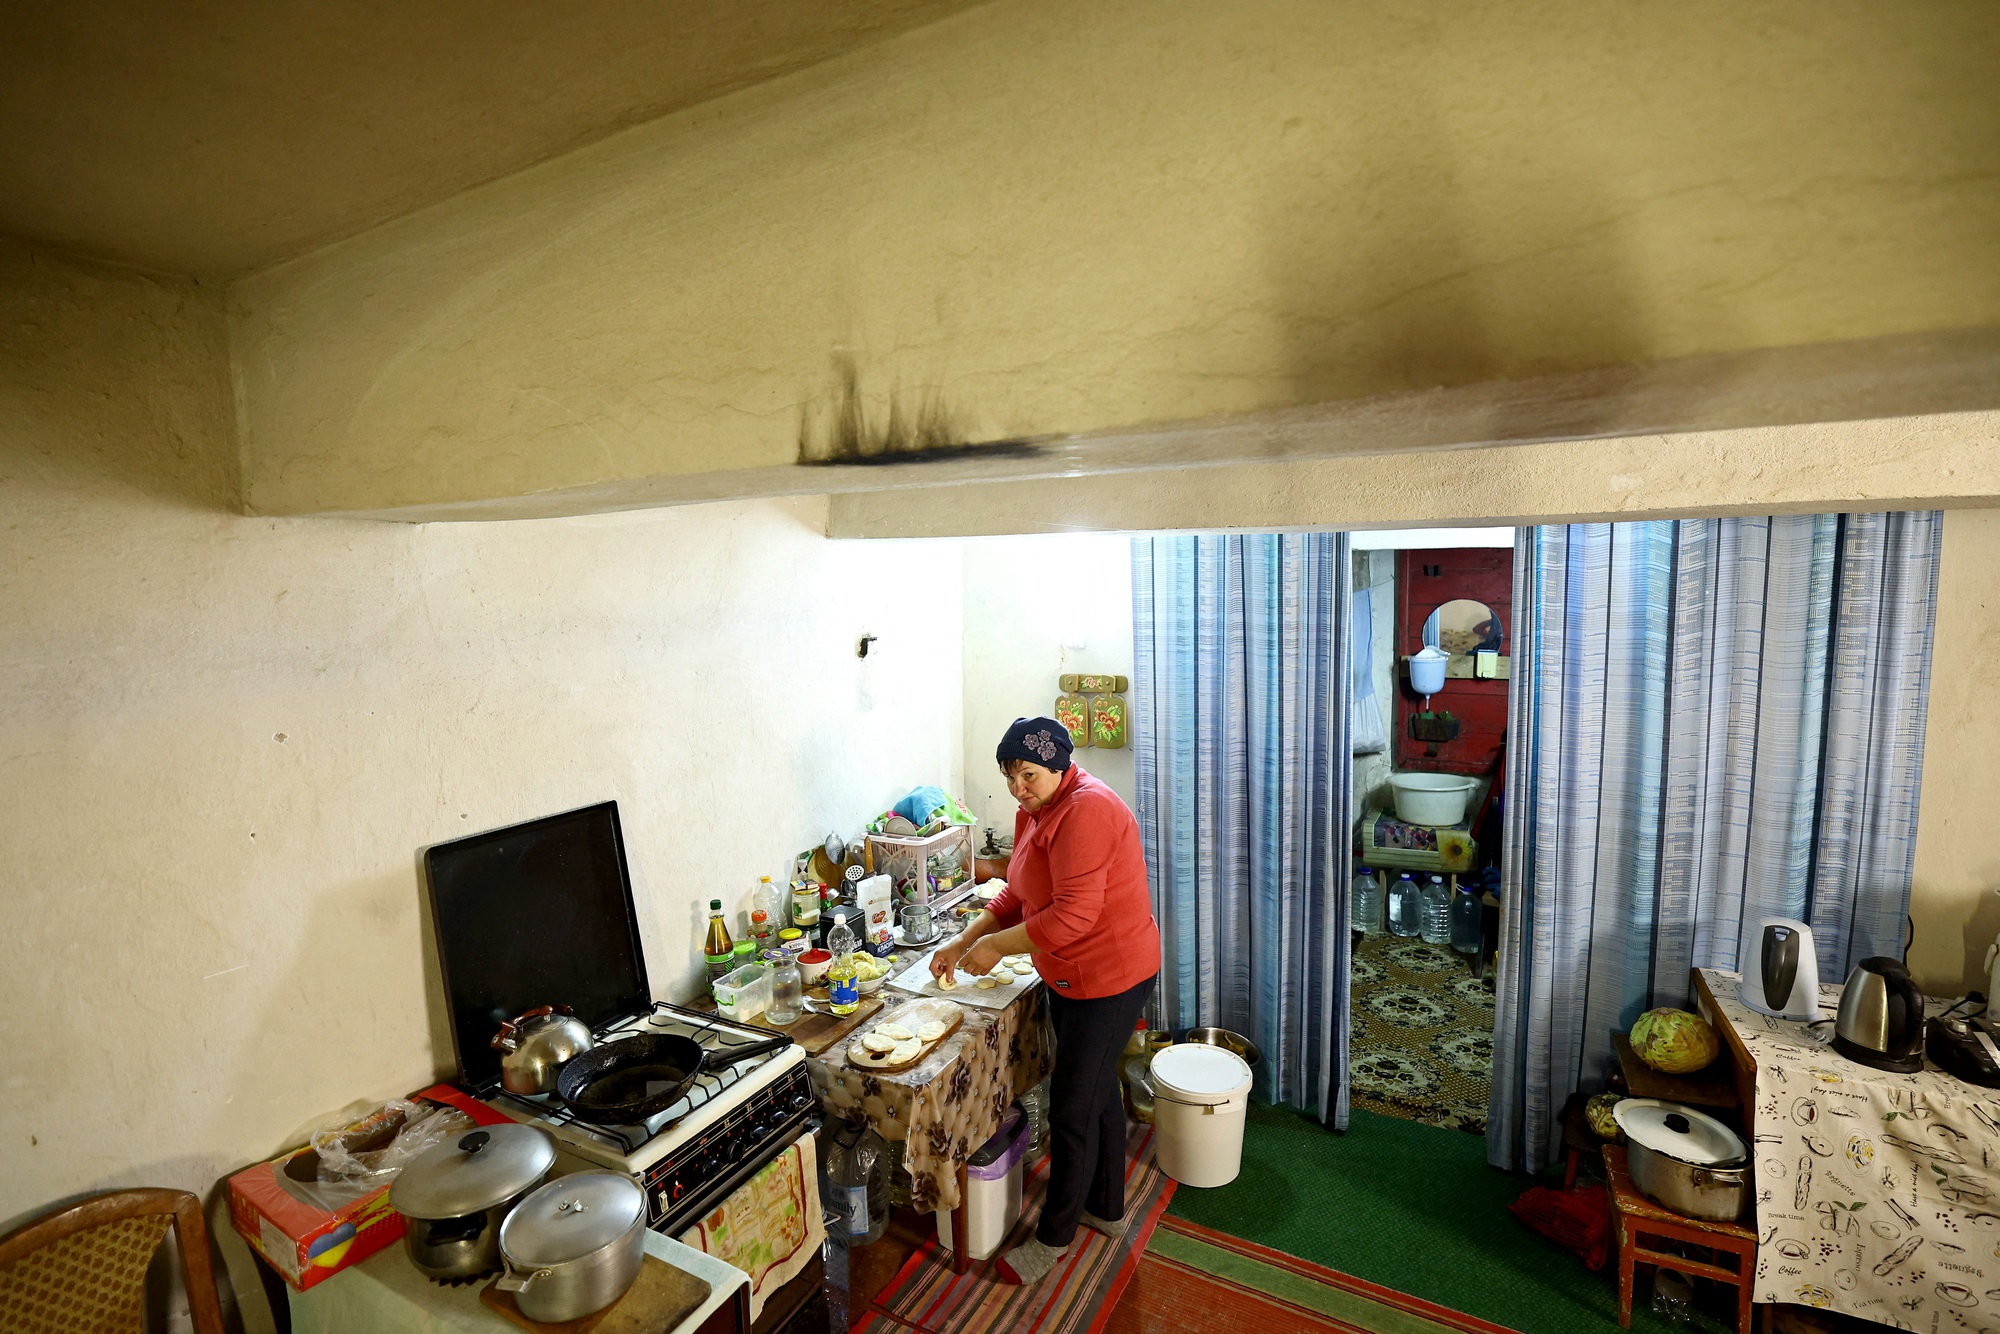 Gặp người phụ nữ sống trong hầm trú ẩn từ thời Liên Xô cũ - Ảnh 1.